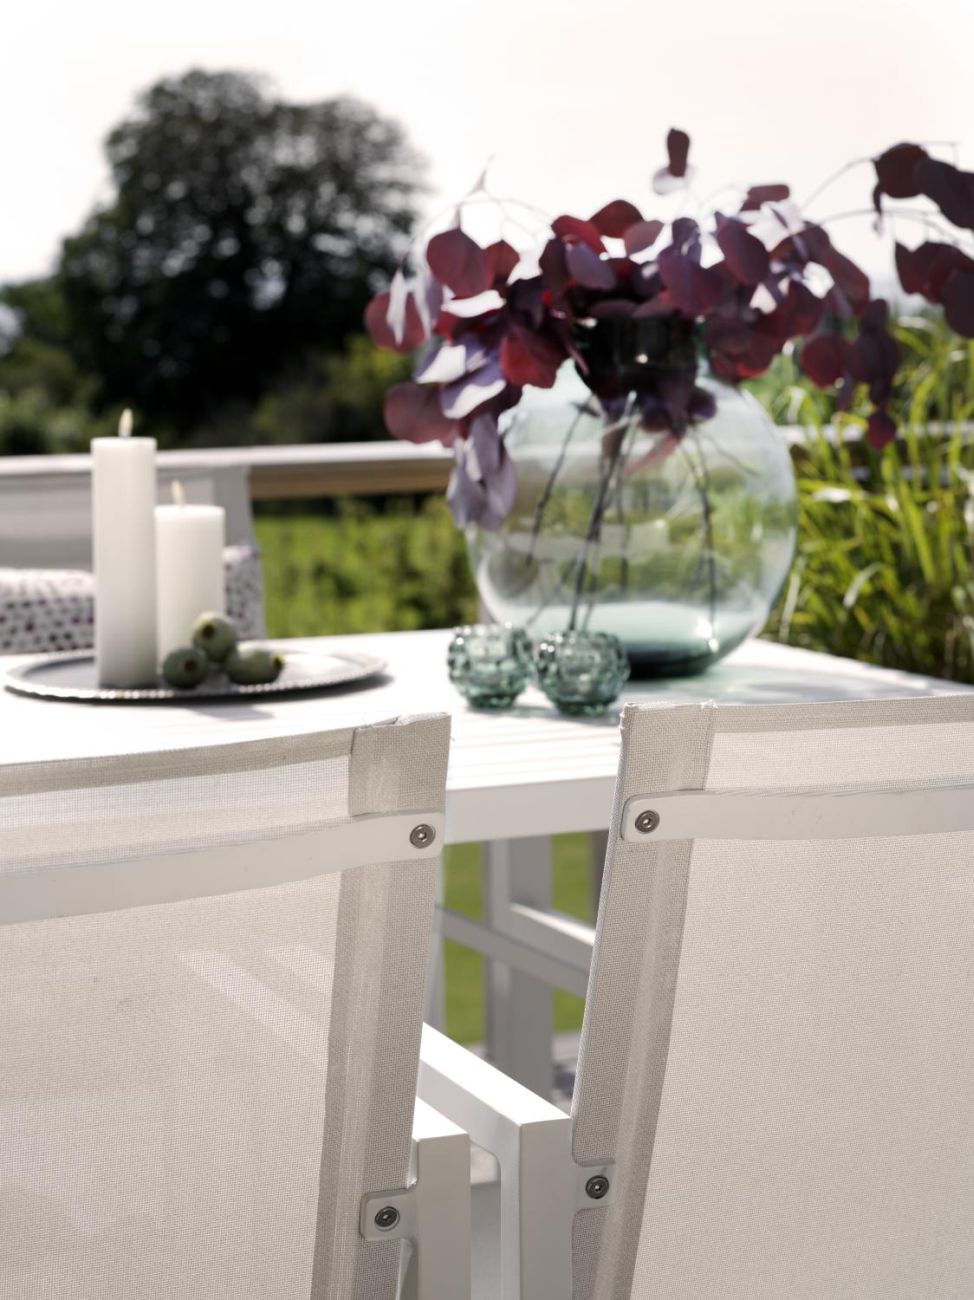 Der Gartenstuhl Vevi überzeugt mit seinem modernen Design. Gefertigt wurde er aus Textilene, welches einen weißen Farbton besitzt. Das Gestell ist aus Teakholz und hat eine weiße Farbe. Die Sitzhöhe des Stuhls beträgt 45 cm.